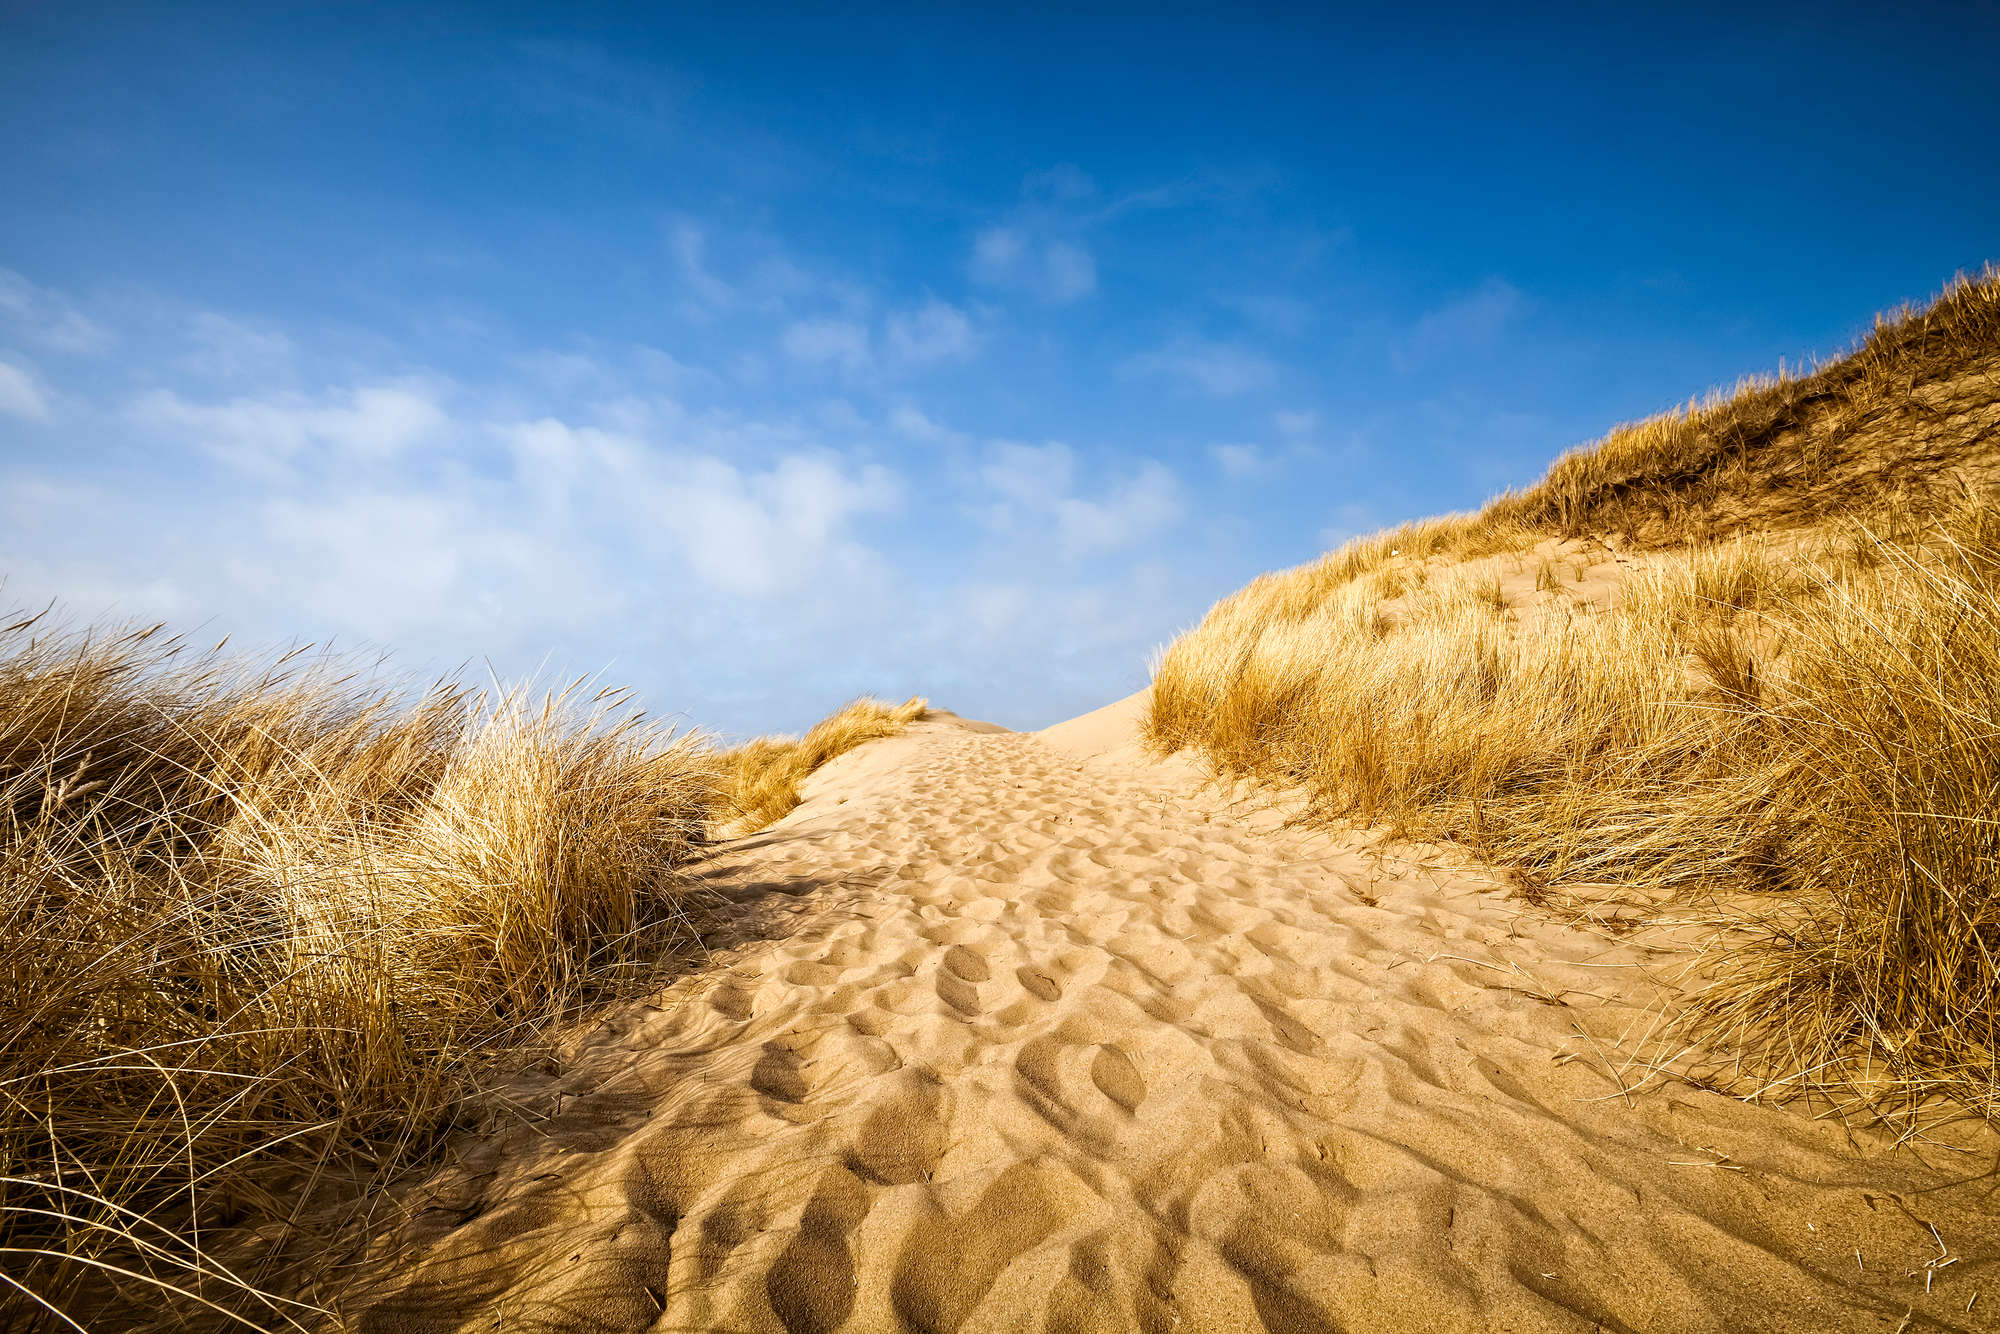             Fotomurali da spiaggia con motivo di dune su tessuto non tessuto di prima qualità
        